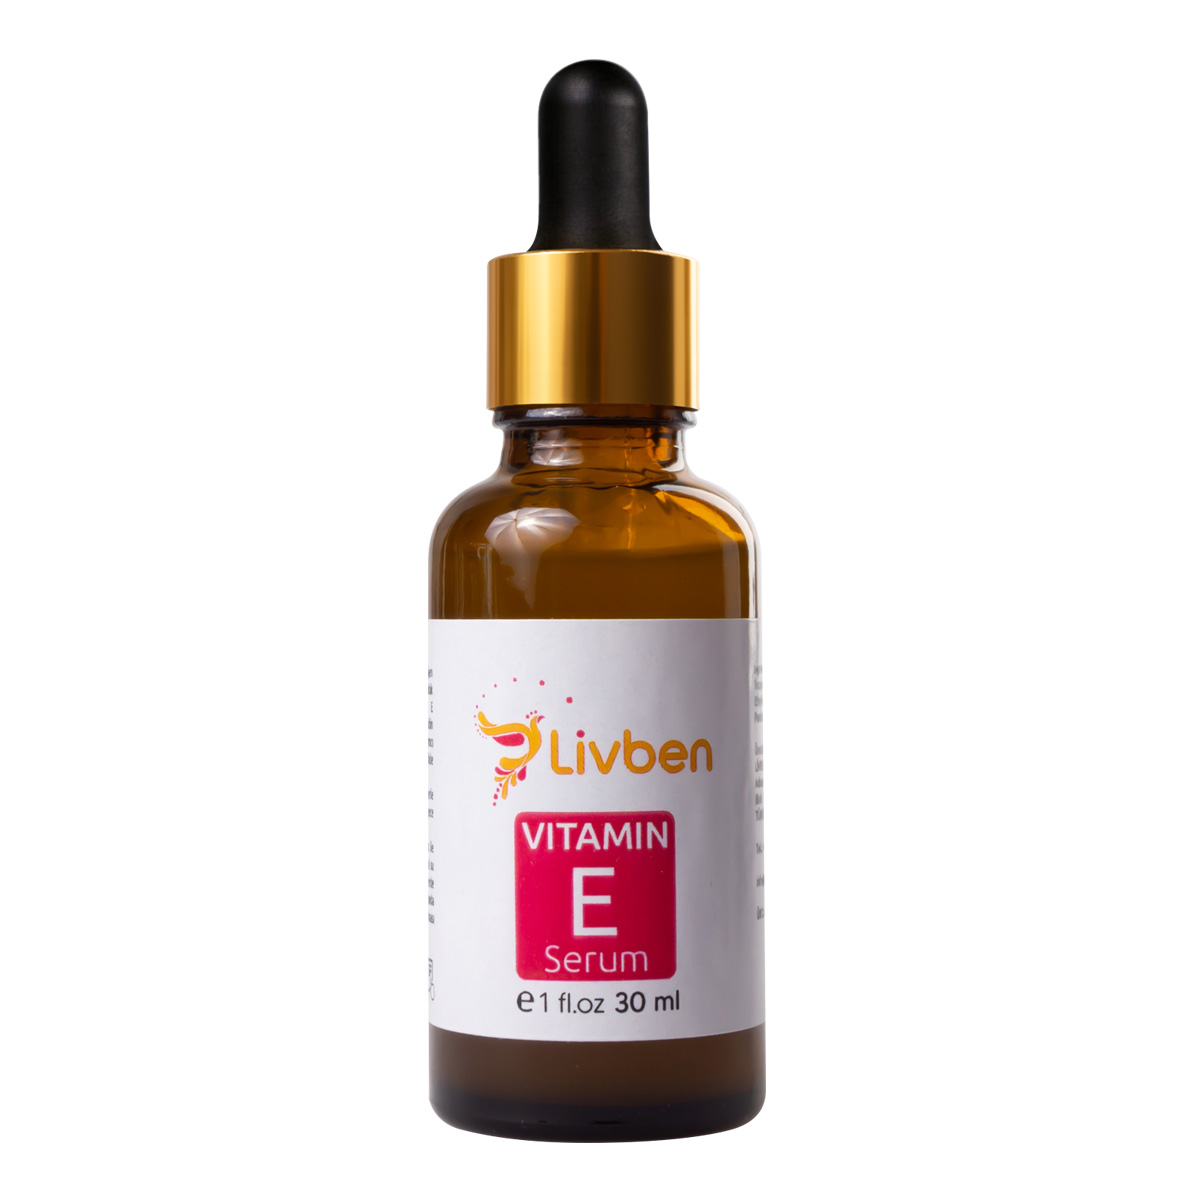 İnce Çizgi Ve Kırışıklık Giderici Vitamin E Serum 30 mL